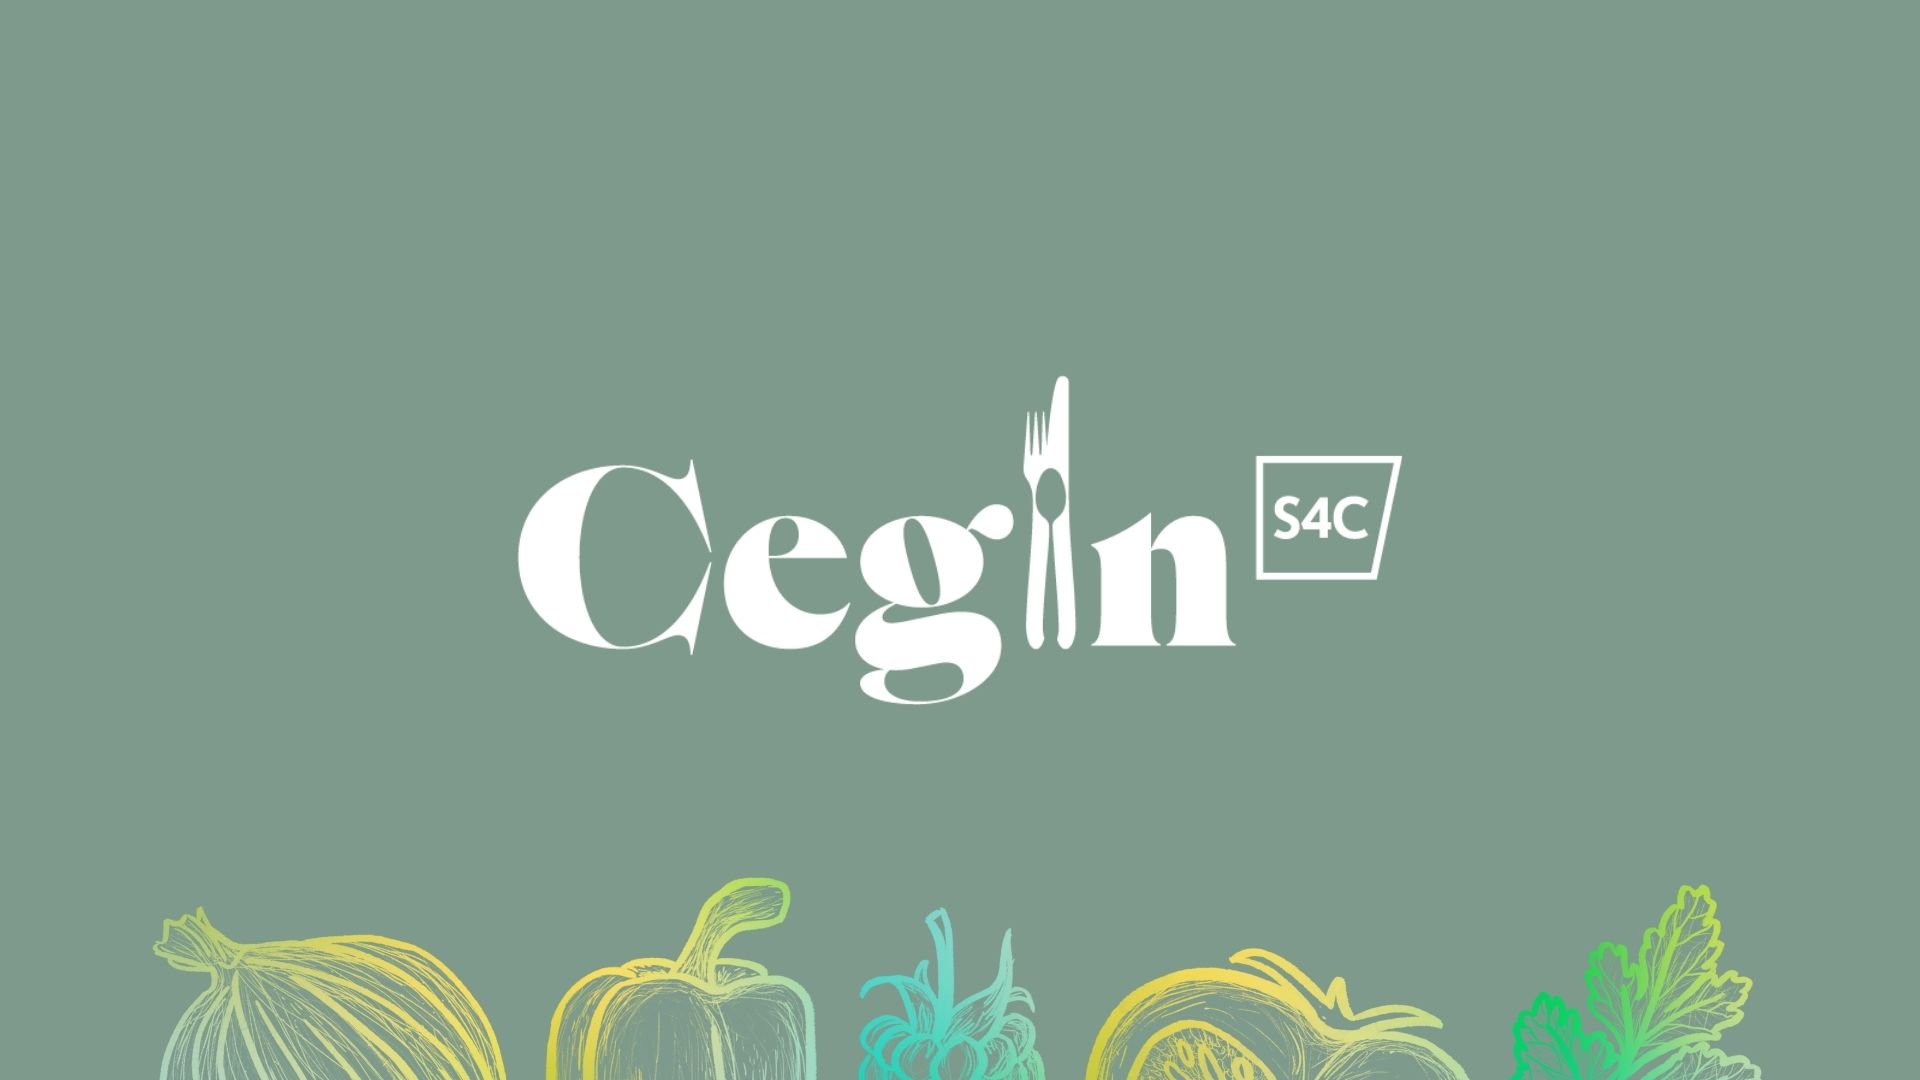 Cegin S4C